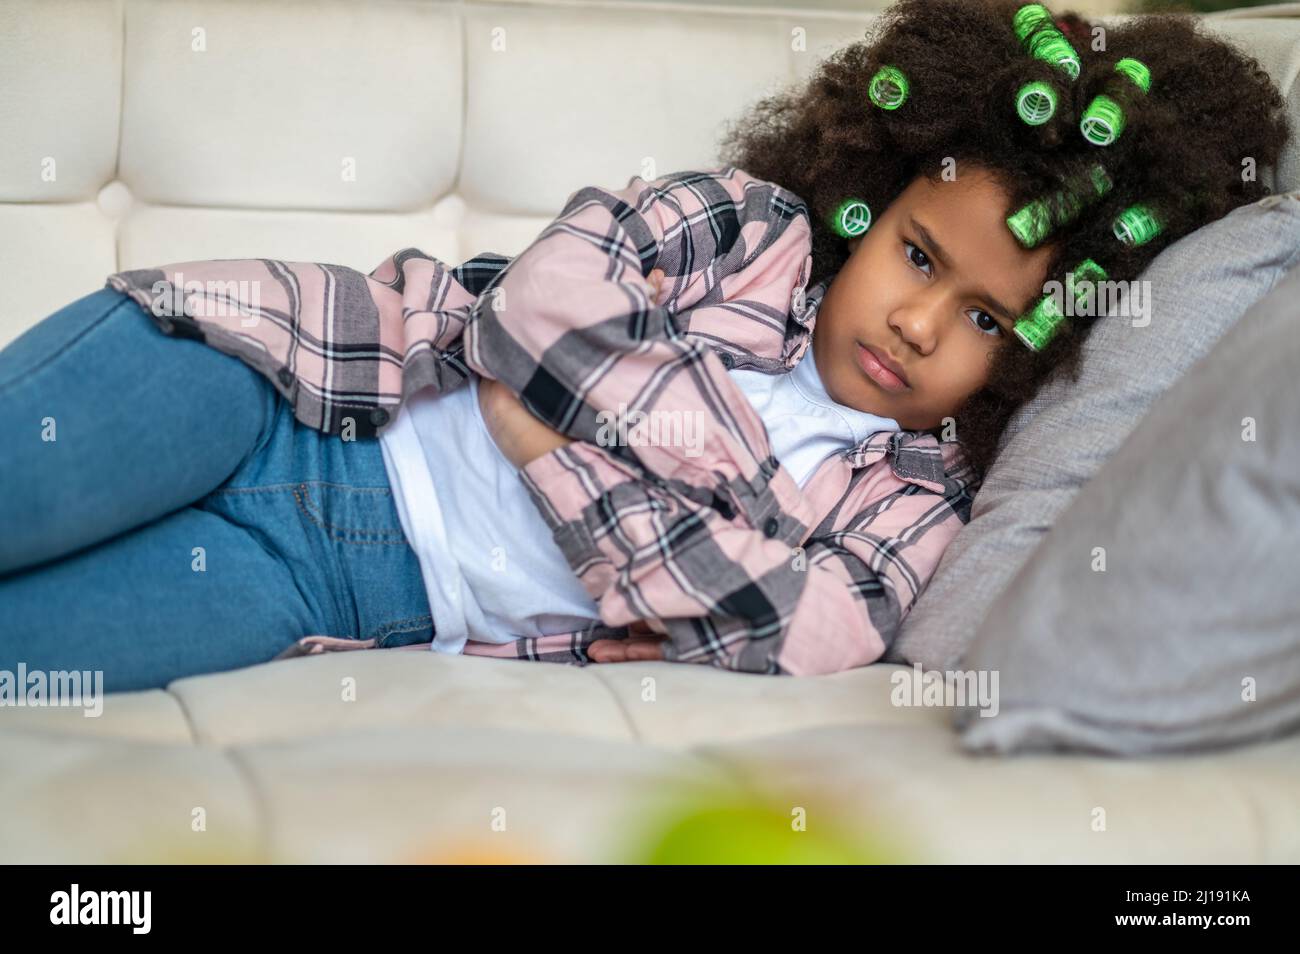 Frowning girl on sofa looking at camera Stock Photo